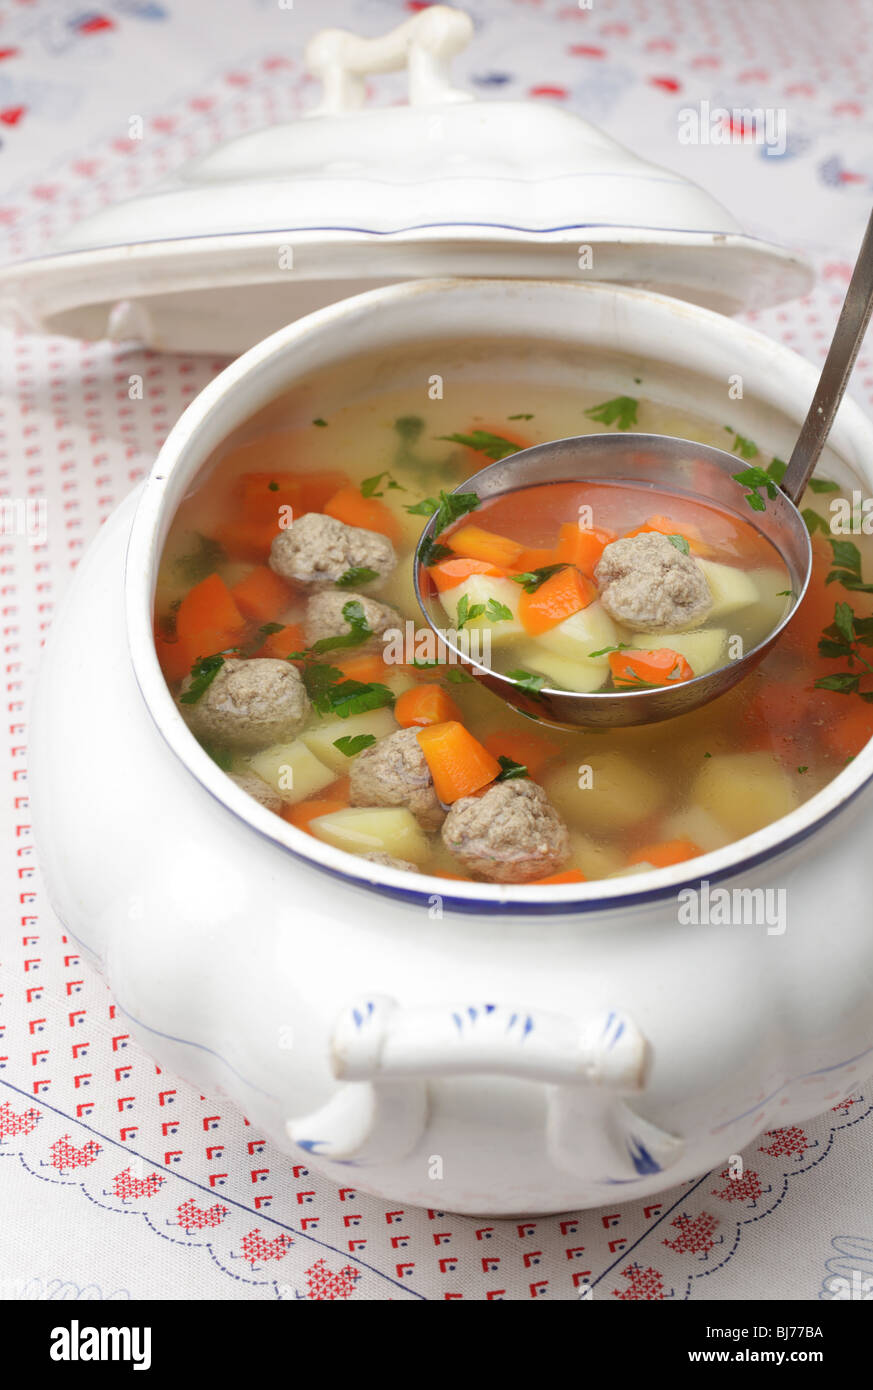 Soupe de légumes avec boulettes dans une soupière Banque D'Images